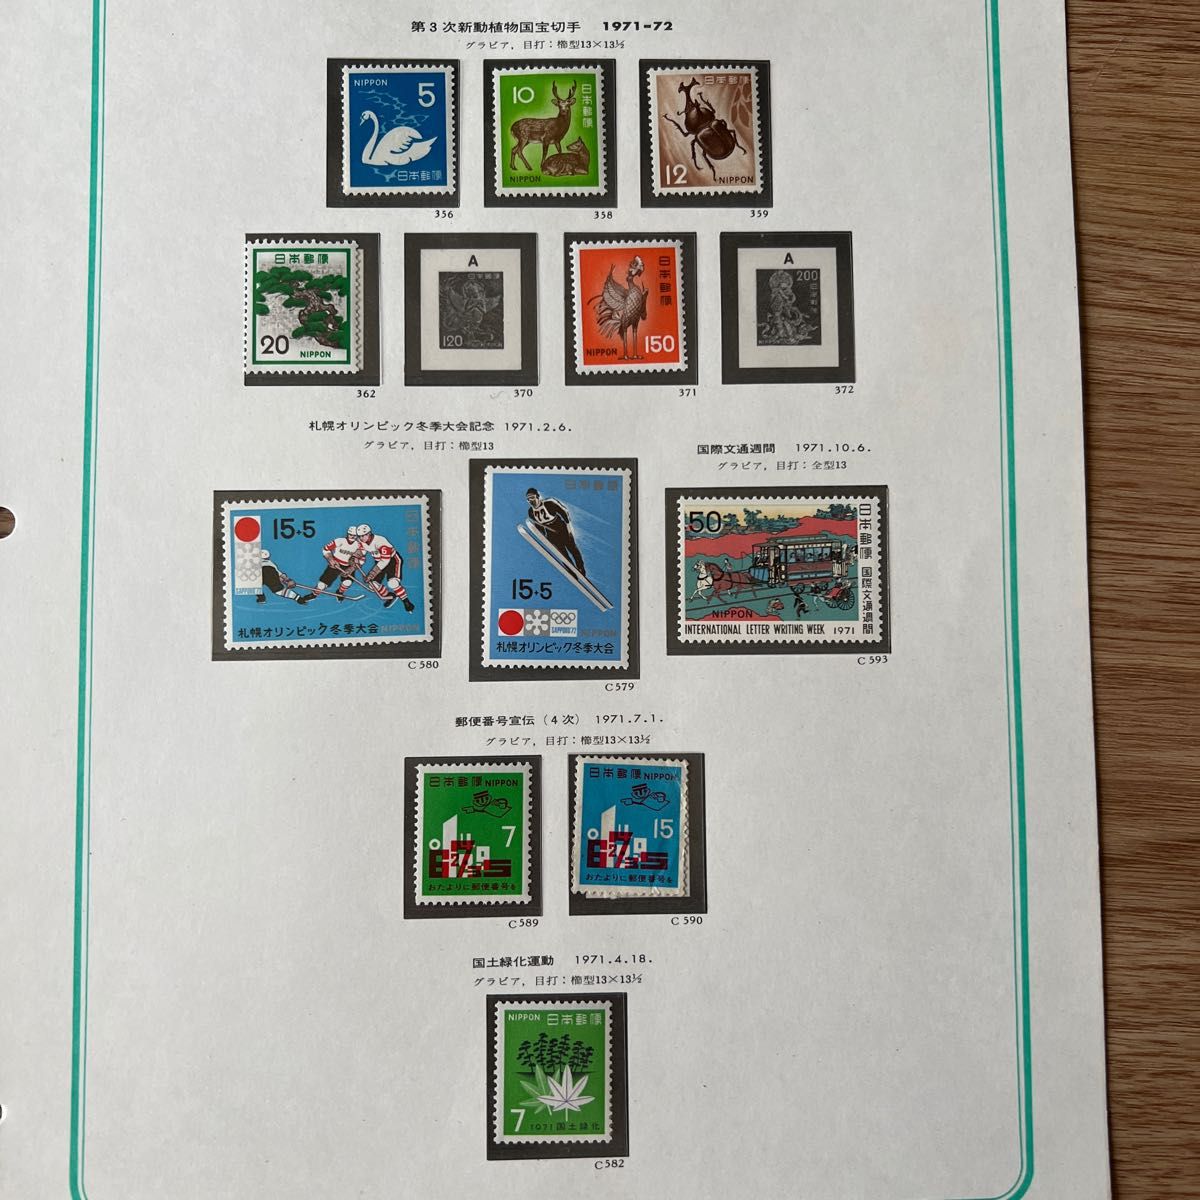 日本切手 リン光性 印刷切手 第1/2/3次新動植物国宝切手 十和田国定公園切手 未使用